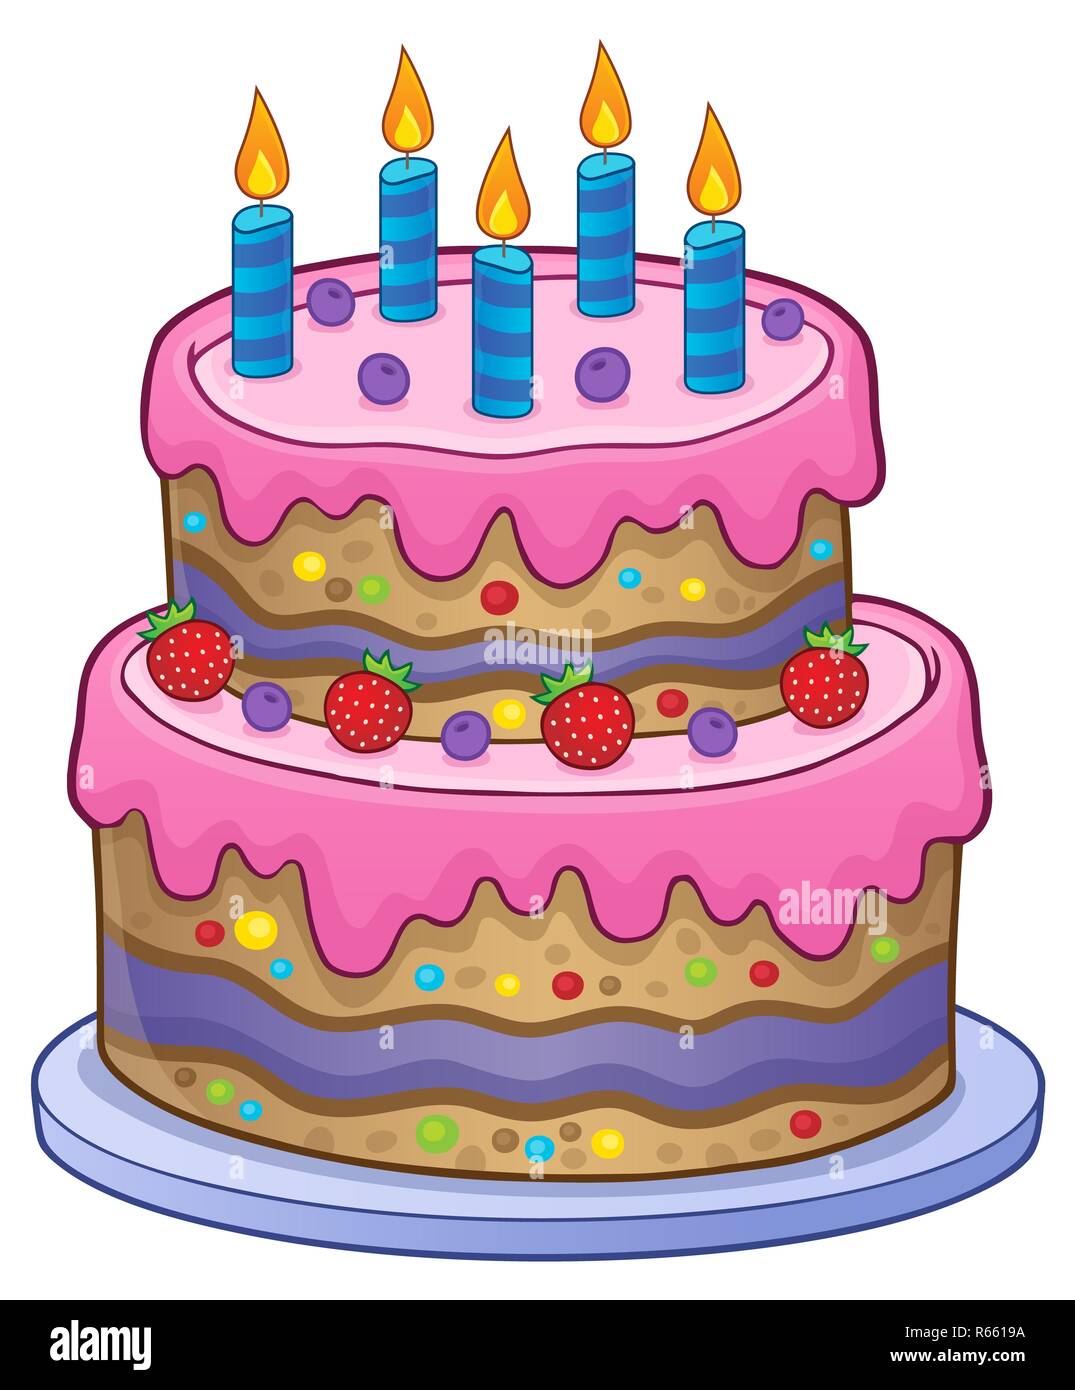 Torta di compleanno con 5 candele Foto stock - Alamy